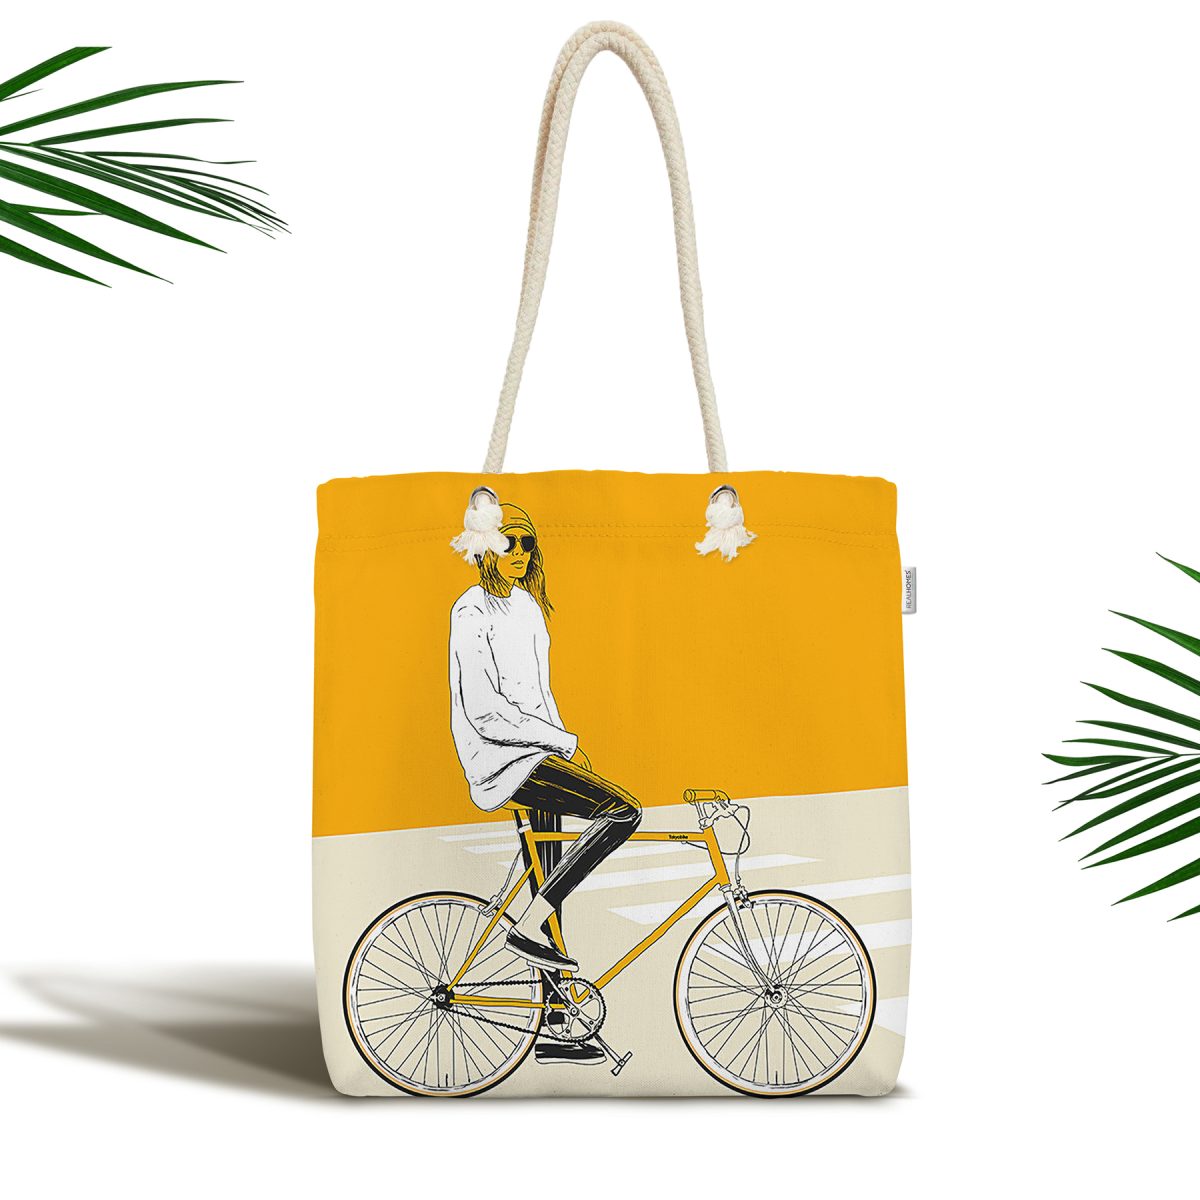 Sarı Krem Zemin Bisikletli Adam Motifli Fermuarlı Kumaş Omuz Çantası Realhomes